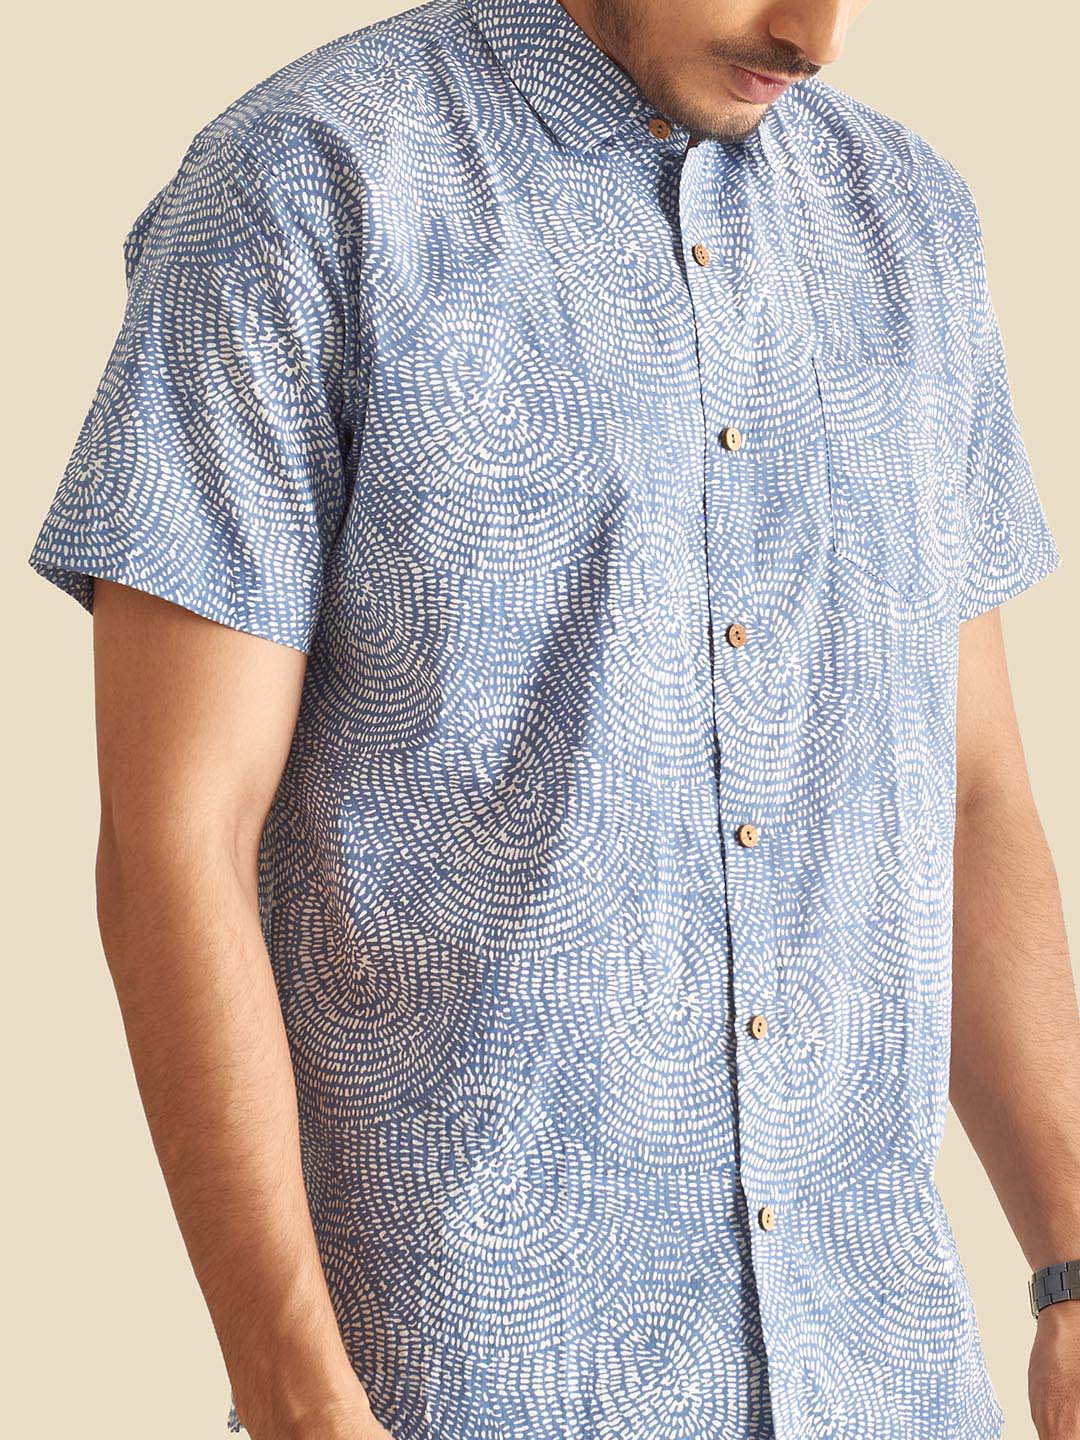 Blue Abstract Circles Printed Halfsleeves Cotton Shirt